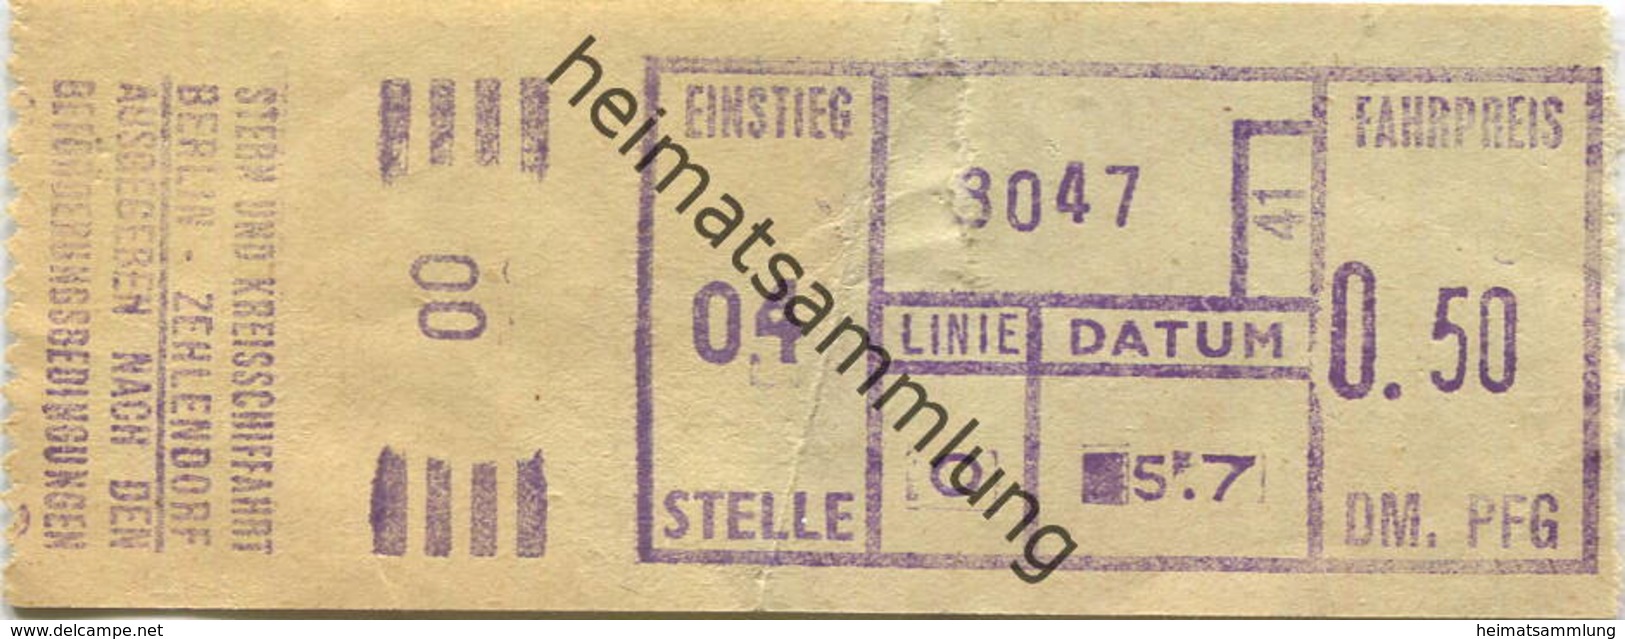 Deutschland - Berlin - Stern Und Kreisschifffahrt Berlin-Zehlendorf - Fahrkarte 50 PFG - Europe